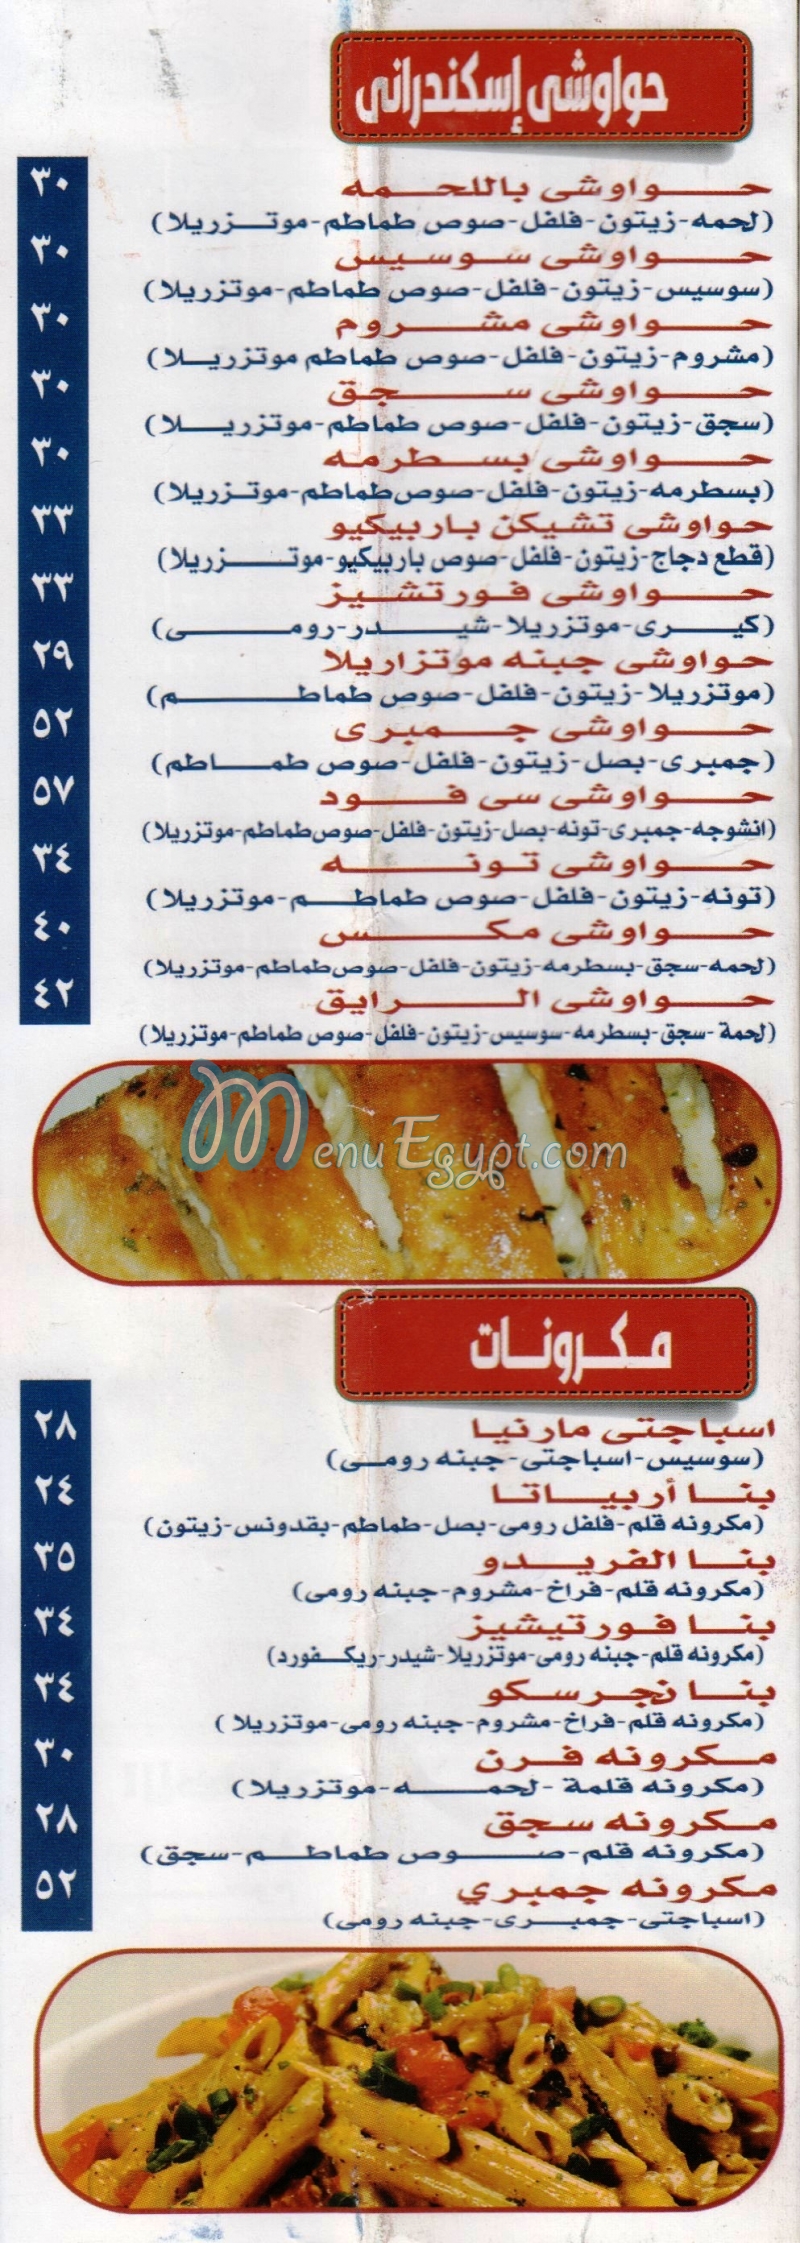 EL Rayek menu